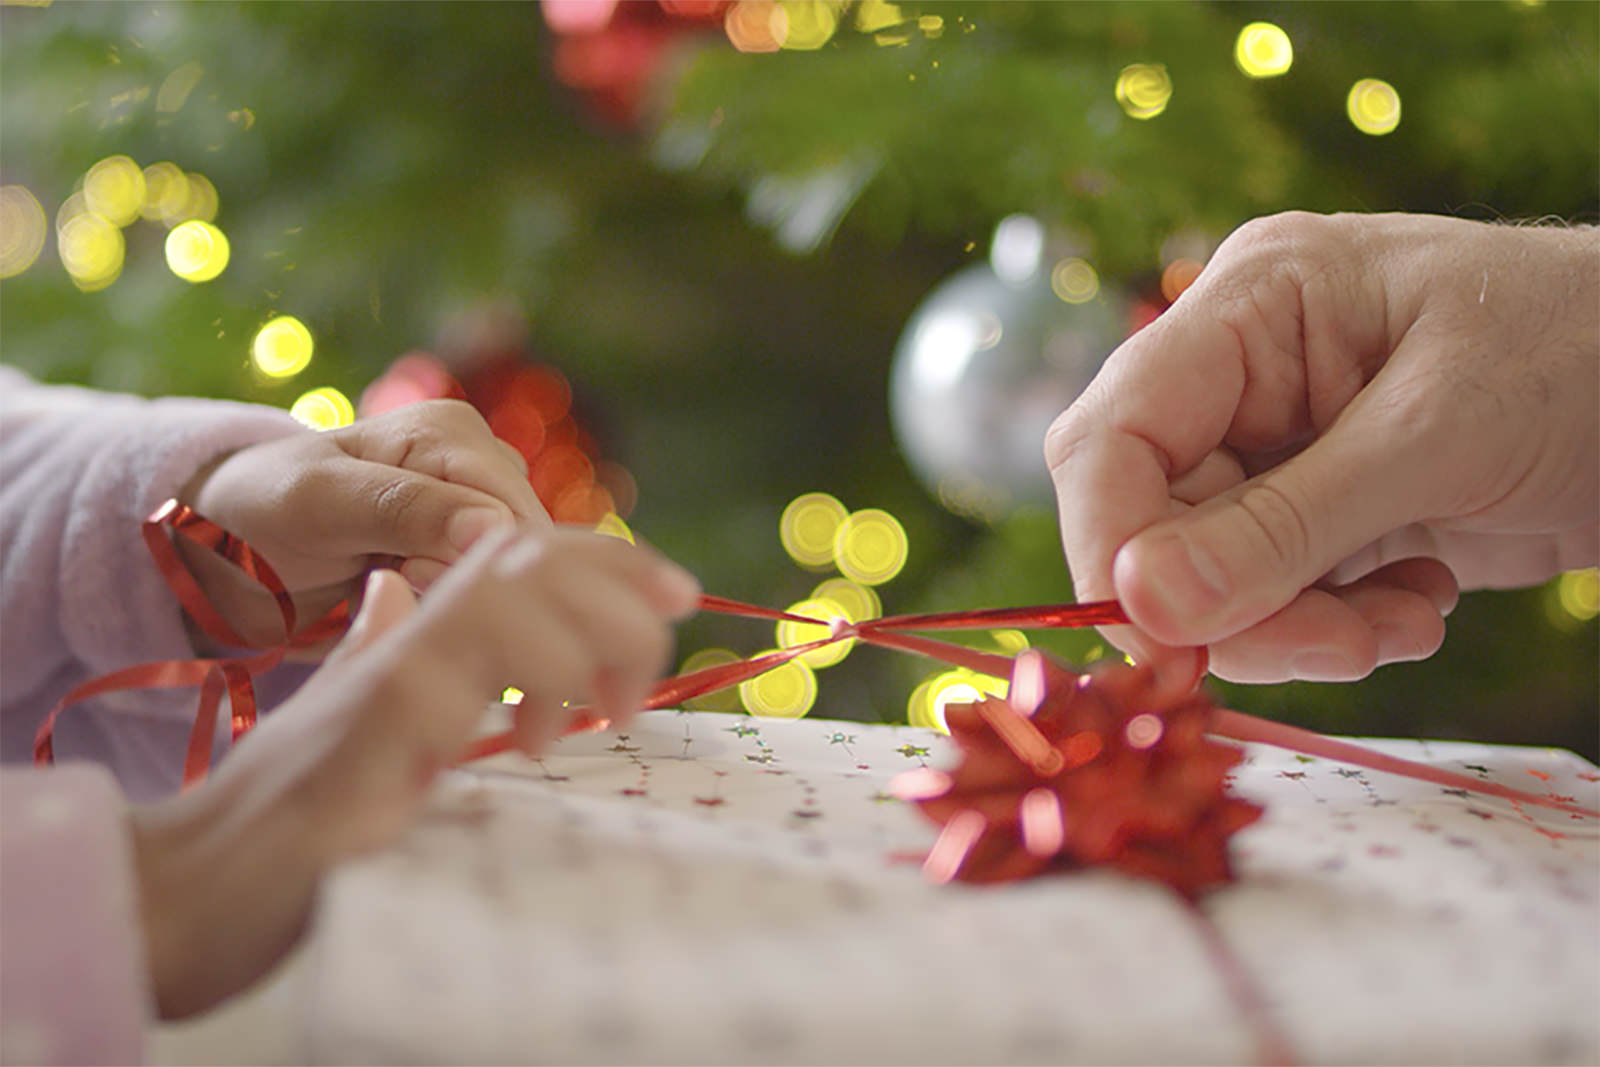 Hang up your Christmas Stock[ing]: Filming Christmas for Videvo﻿